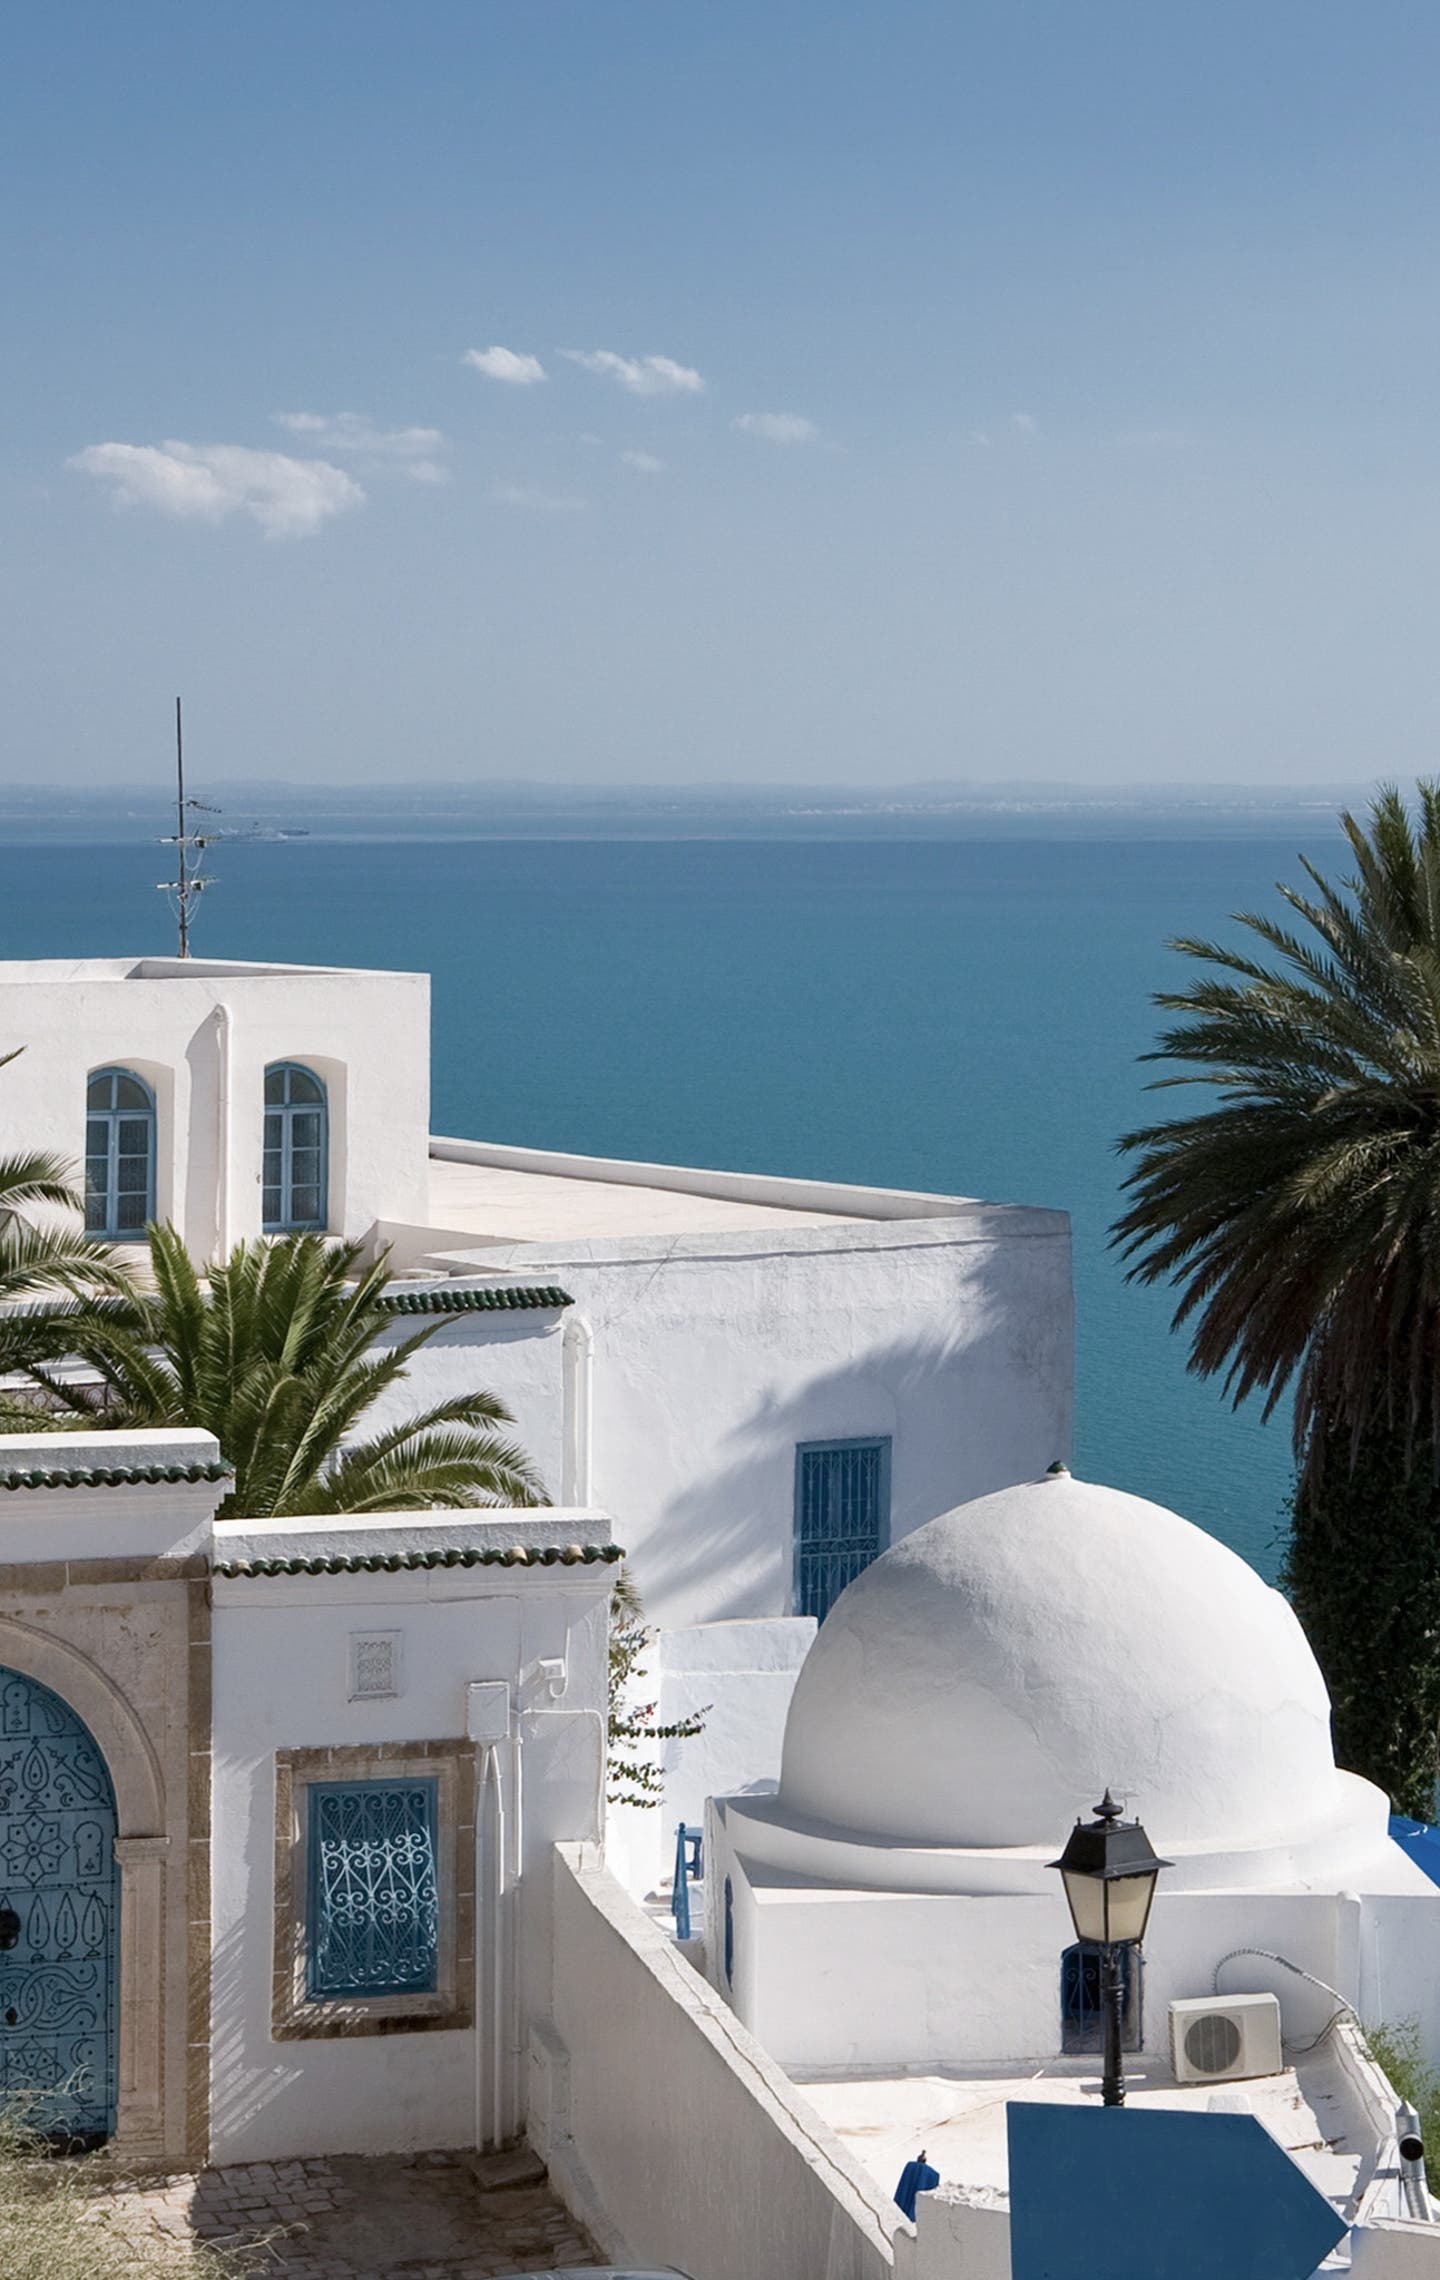 Typisches Gebäude am Meer in Tunesien